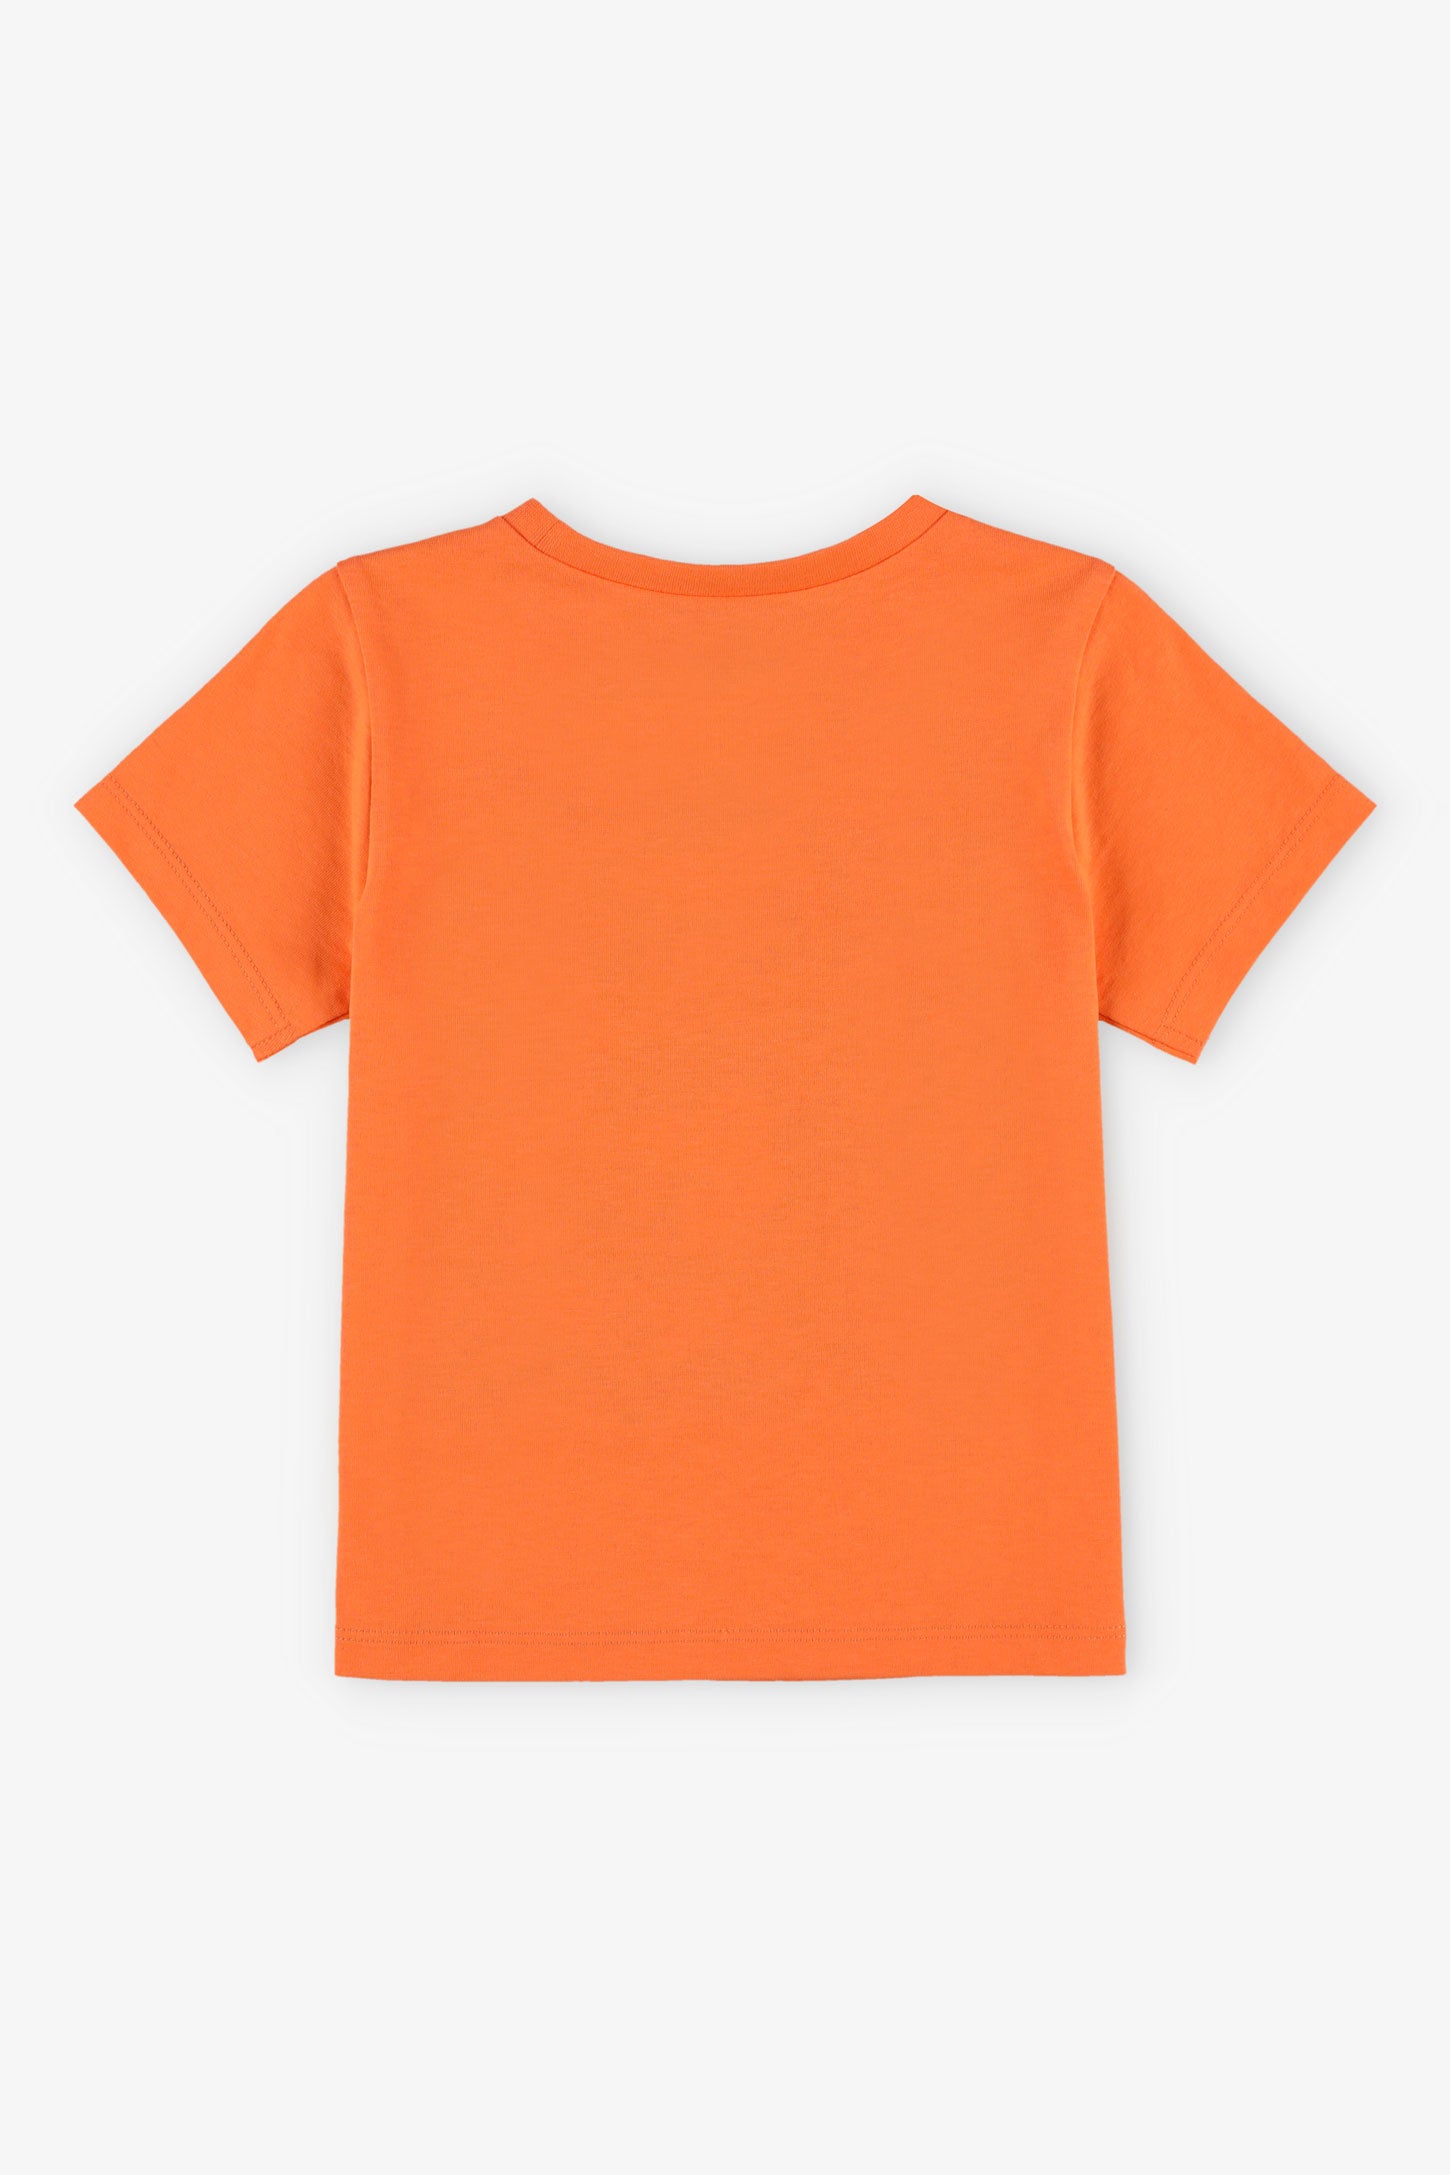 T-shirt col rond à imprimé coton, 2T-3T, 2/15$ - Bébé garçon && ORANGE